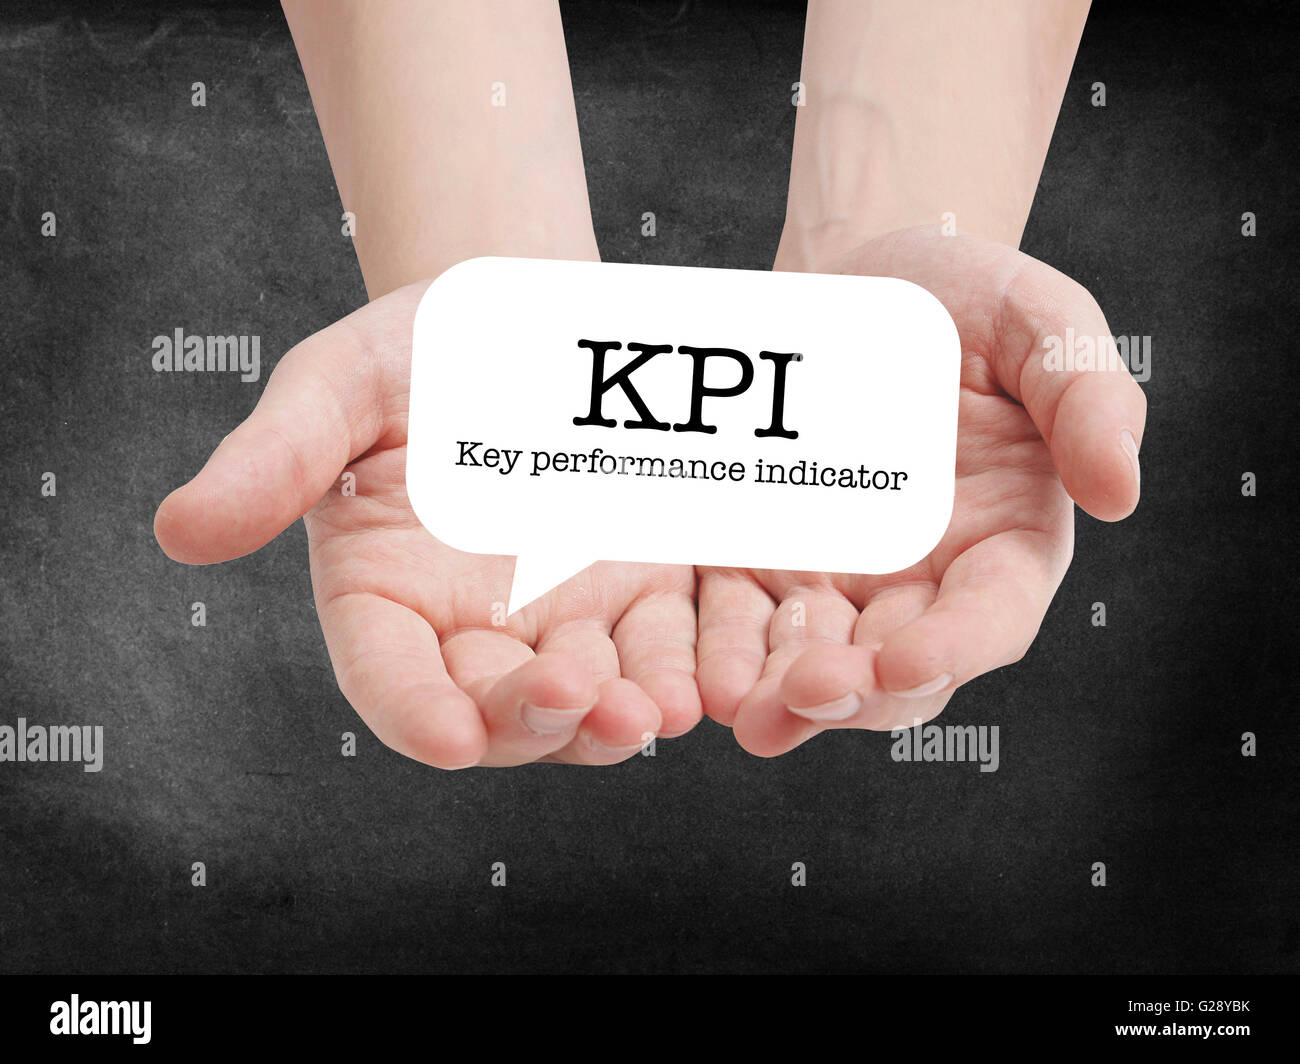 KPI written on a speechbubble Stock Photo